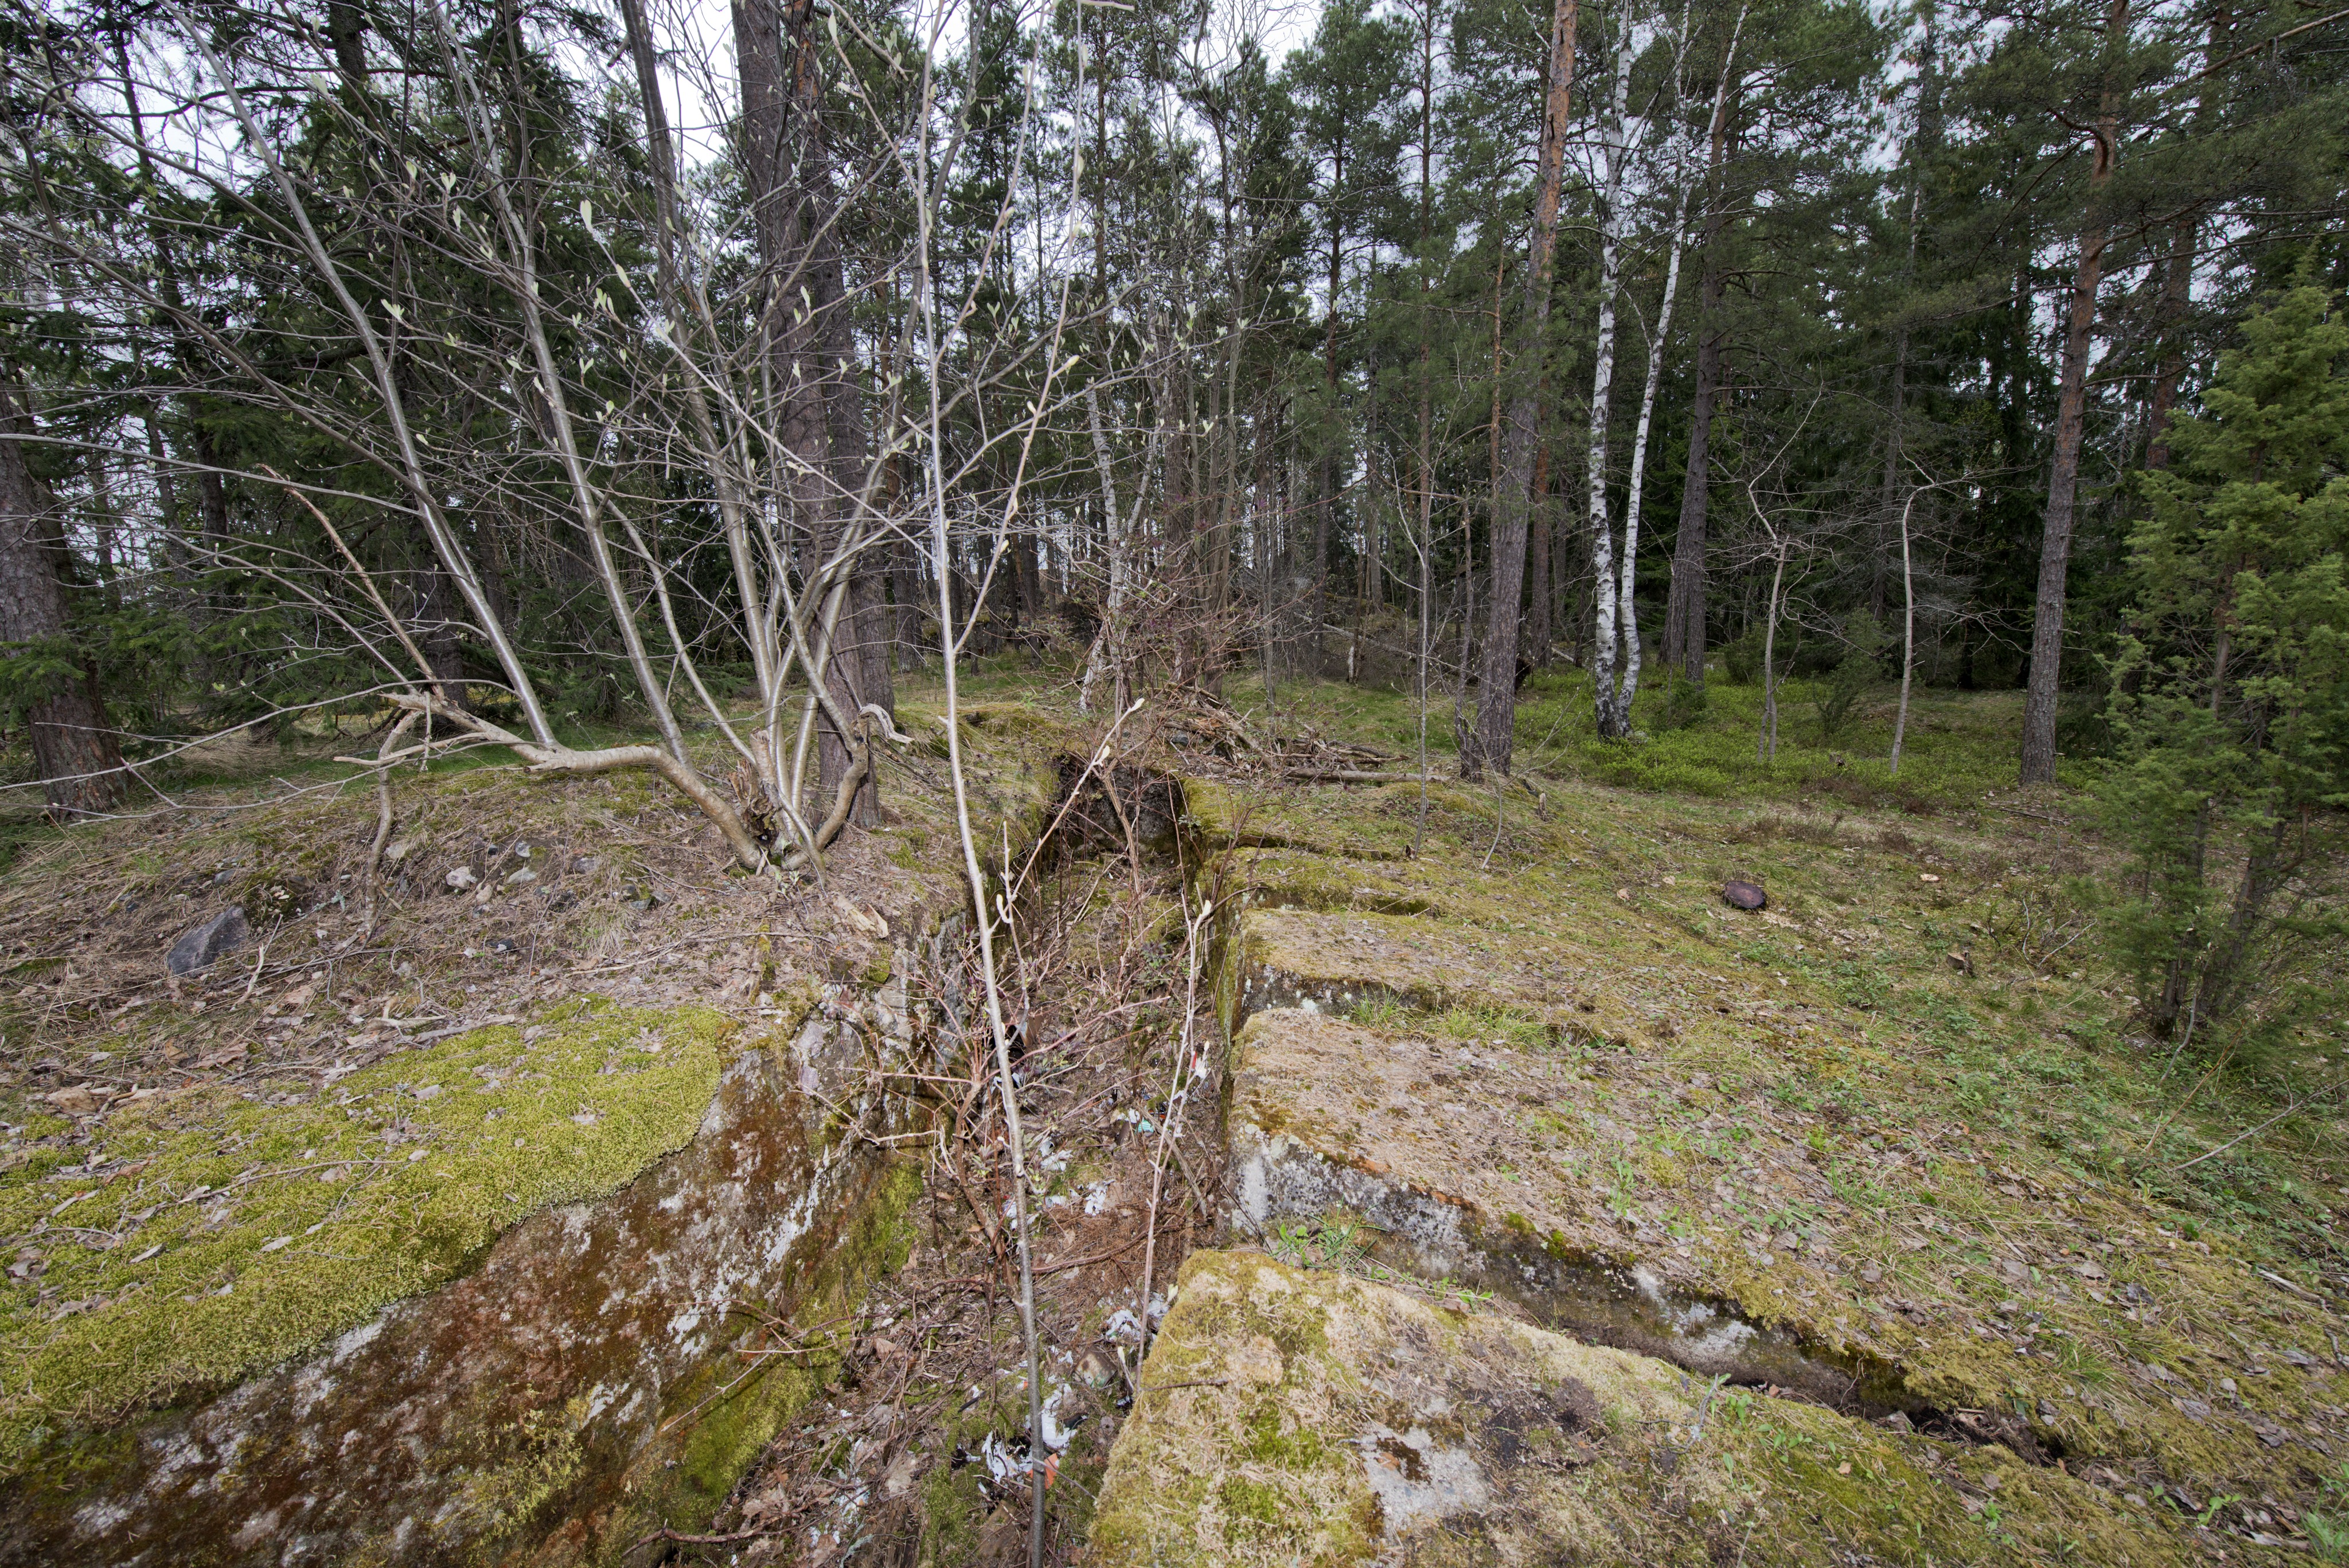 Ruukinranta. Ensimmäisen maailmansodan aikainen maalinnoitus, puolustusasema XXXVI:2 Ruukinrannassa, Espoossa. Kuvassa on aseman eteläosassa sijaitseva kaareva, kallioon louhittu kivääriasema, jossa on ampuma-aukkoja yhdeksälle kiväärimiehelle. Seiniä on tuettu betonilla. Matalat ampuma-aukot lähtevät säteittäin hautamaisesta asemasta. Rakenteen päällä kasvaa sammalta. Asema sijaitsee yksityisen omakotitalon pihamaalla.Asema sijaitsee yksityisen omakotitalon pihamaalla. Kuvaussuuntana pohjoinen.